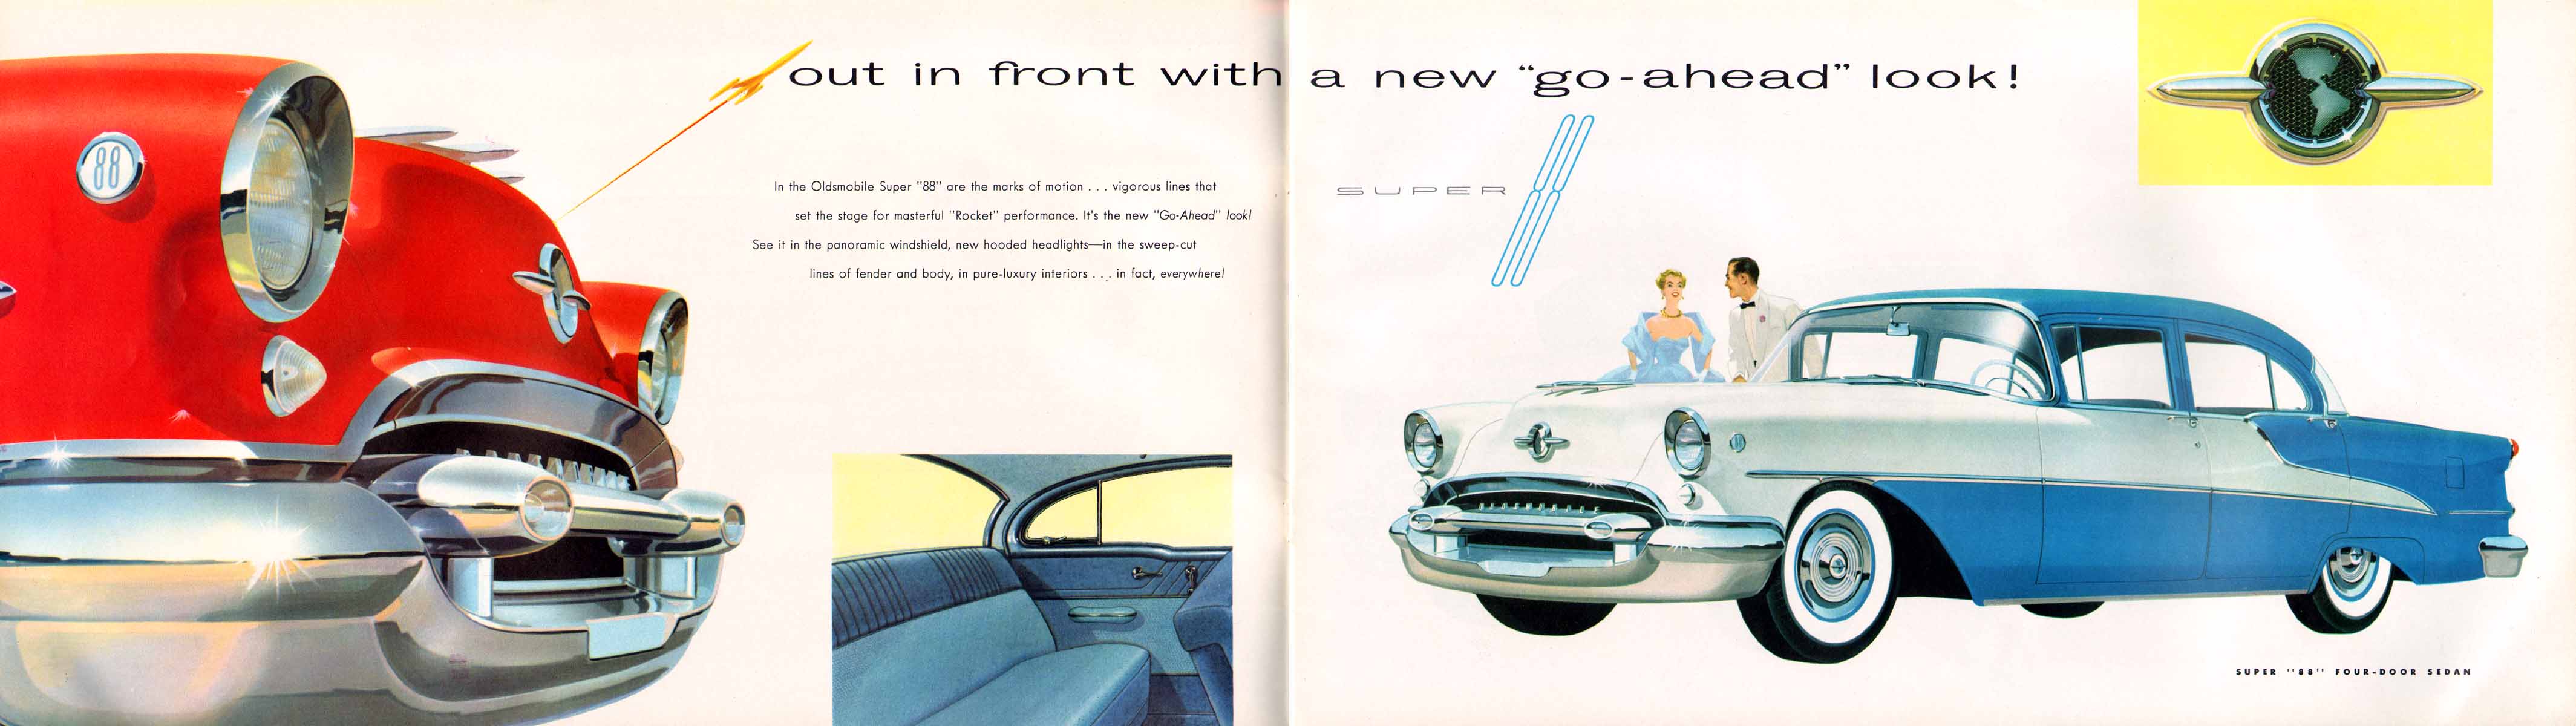 1955_Oldsmobile-04-05